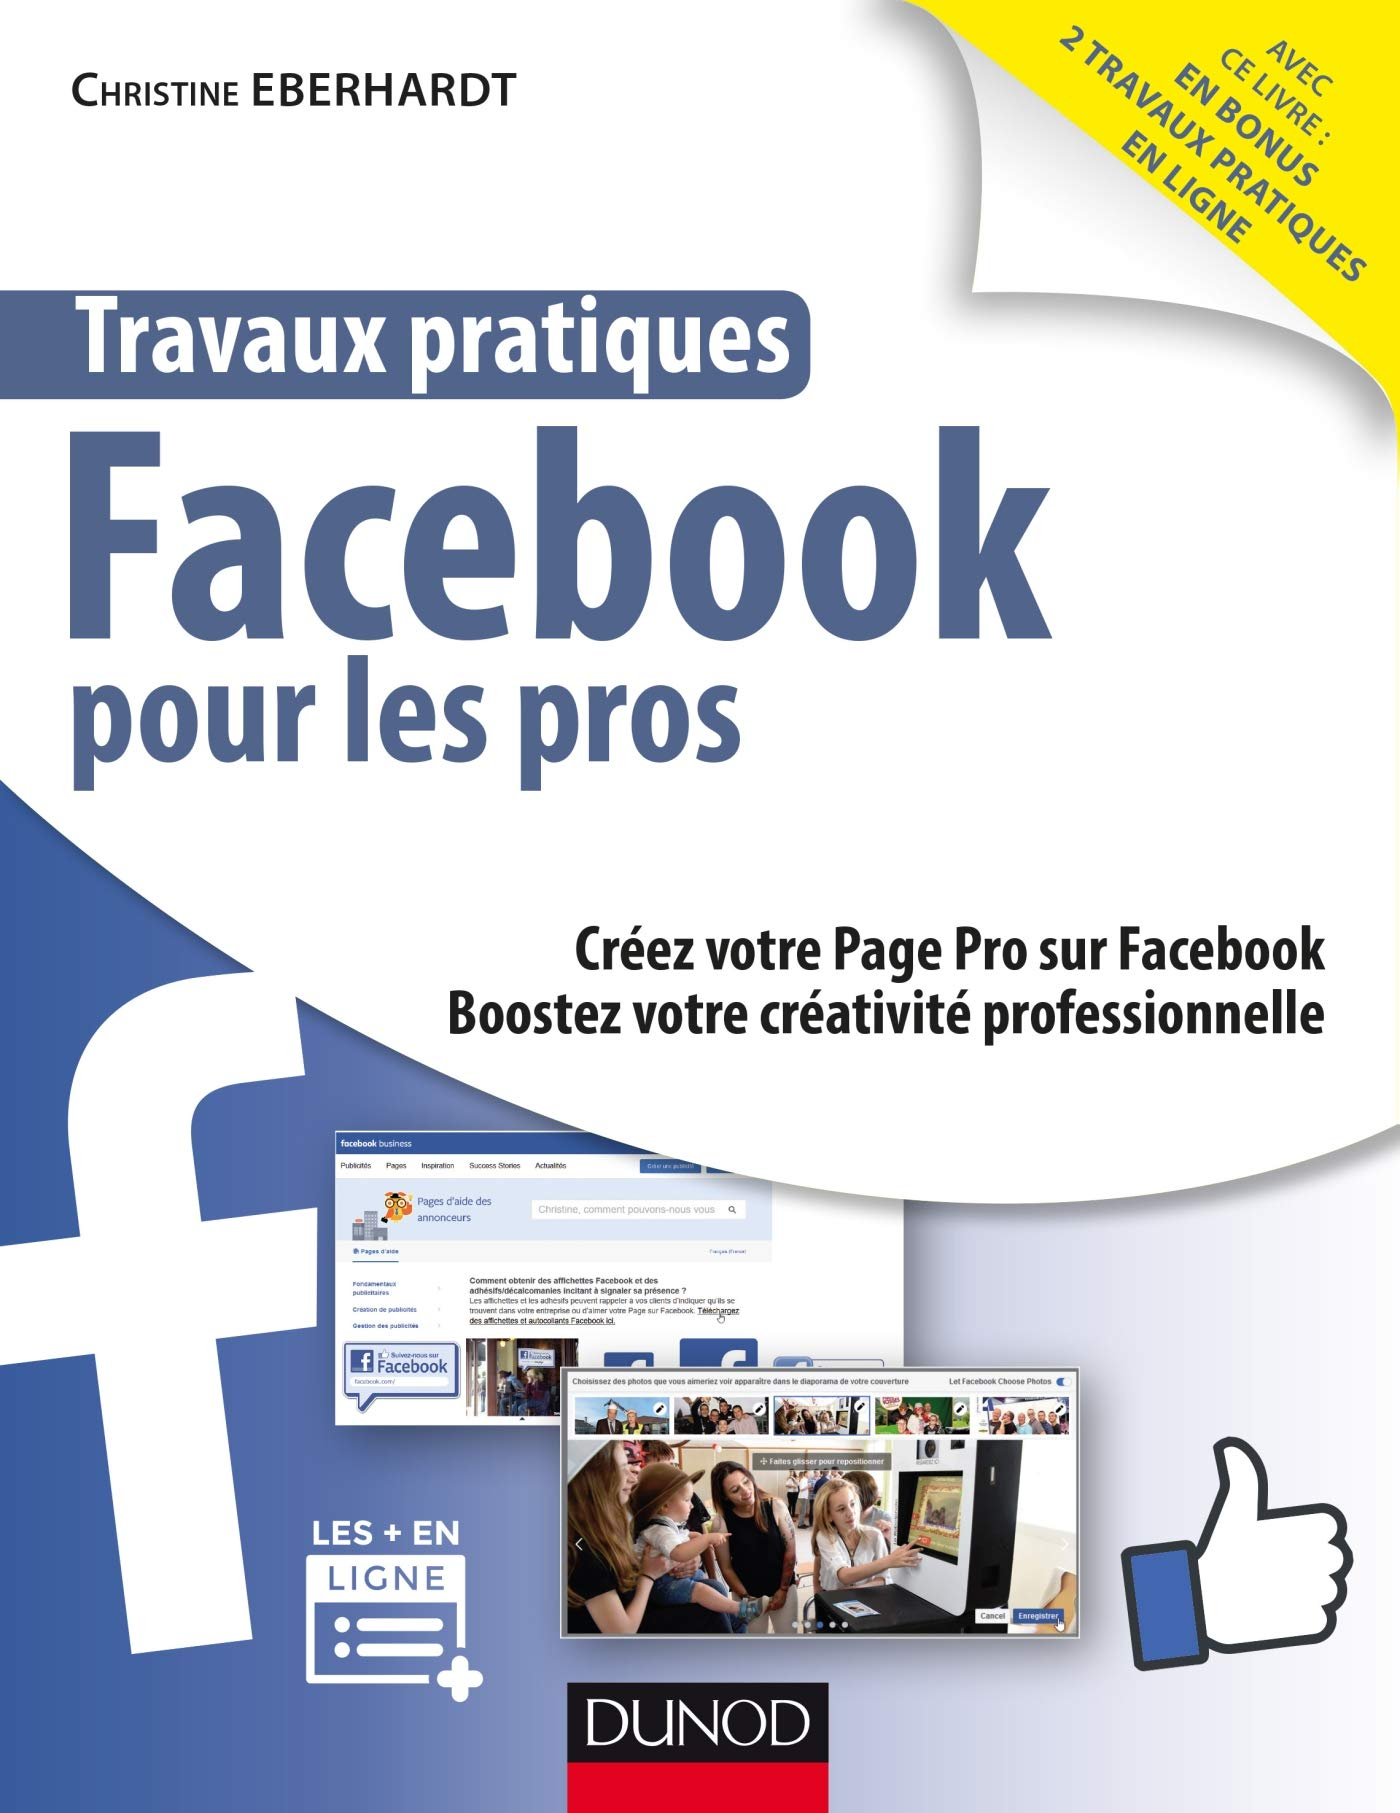 Travaux pratiques Facebook pour les pros : créez votre page pro sur Facebook, boostez votre activité